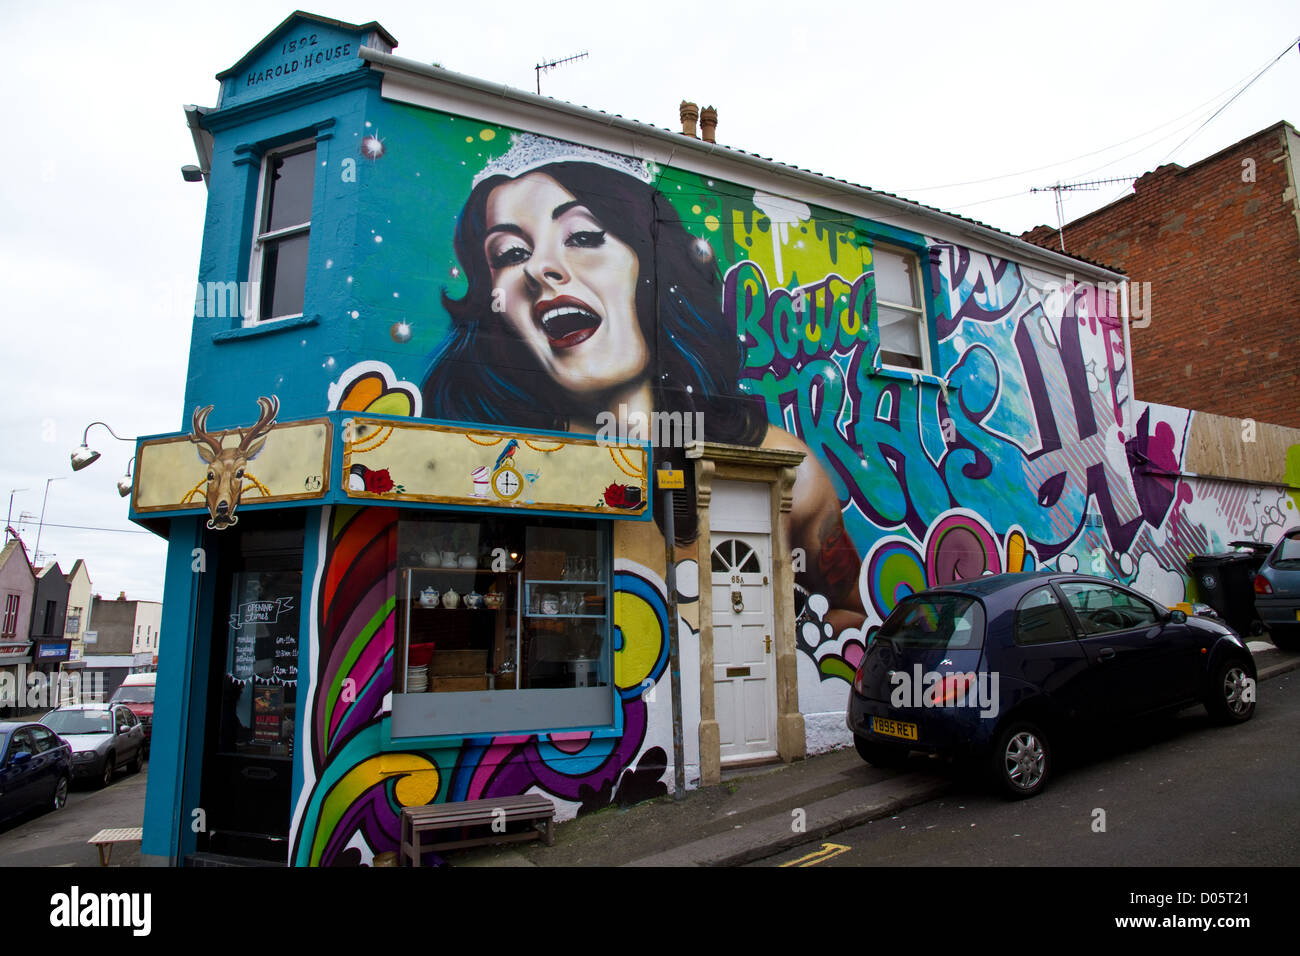 Art urbain Graffiti/image d'une reine de beauté peint sur le côté d'une maison et d'atelier à Bedminster, Bristol Banque D'Images